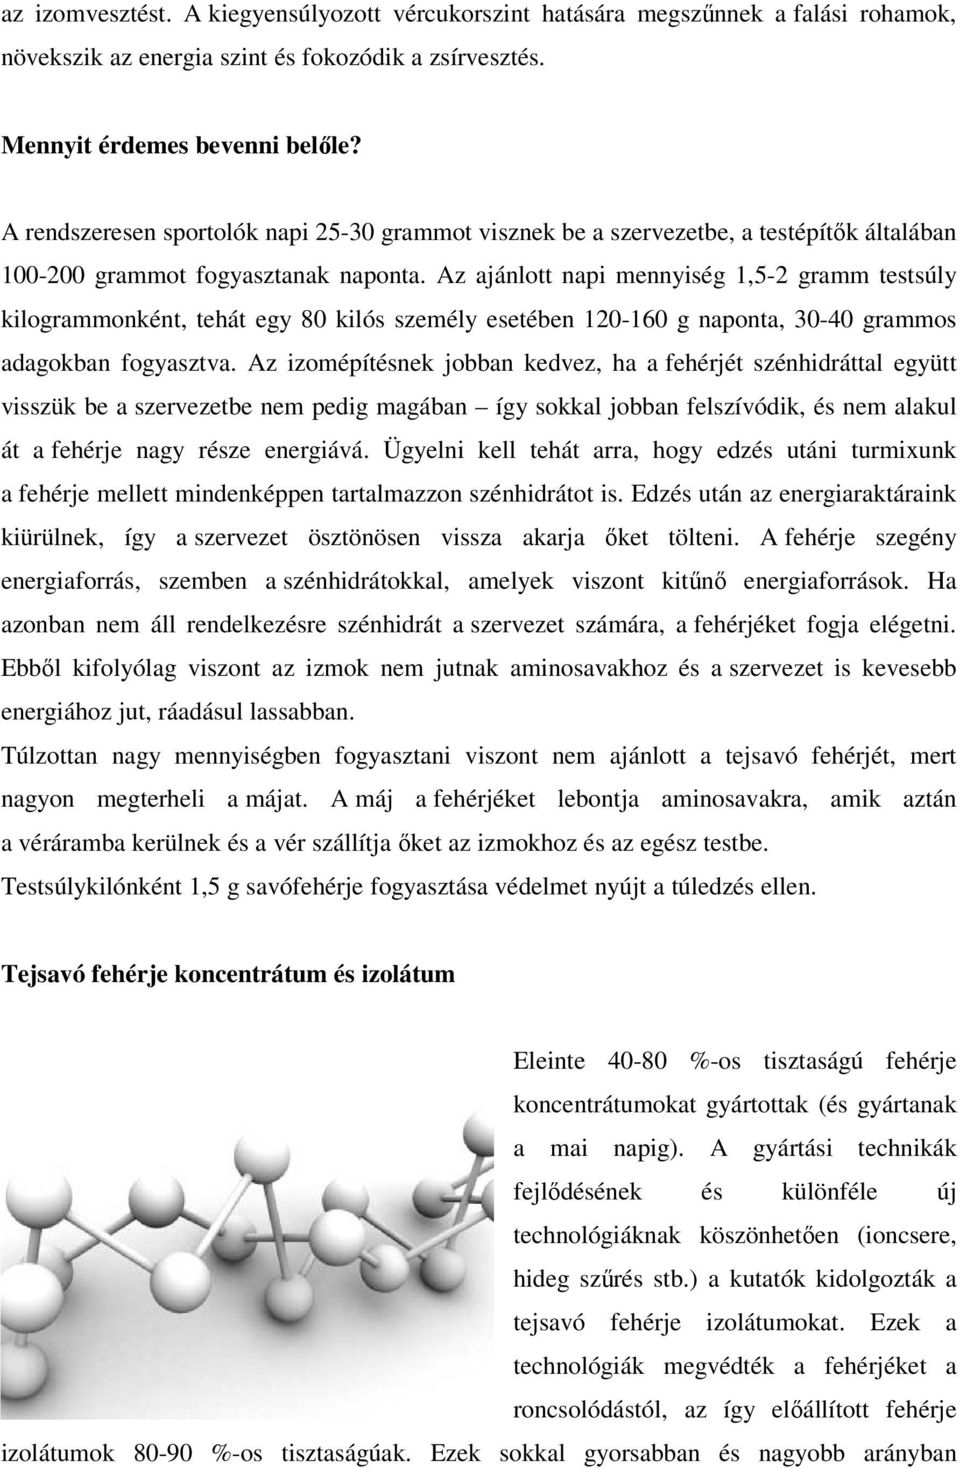 Kutatási cikk a fogyásról - pureste.hu